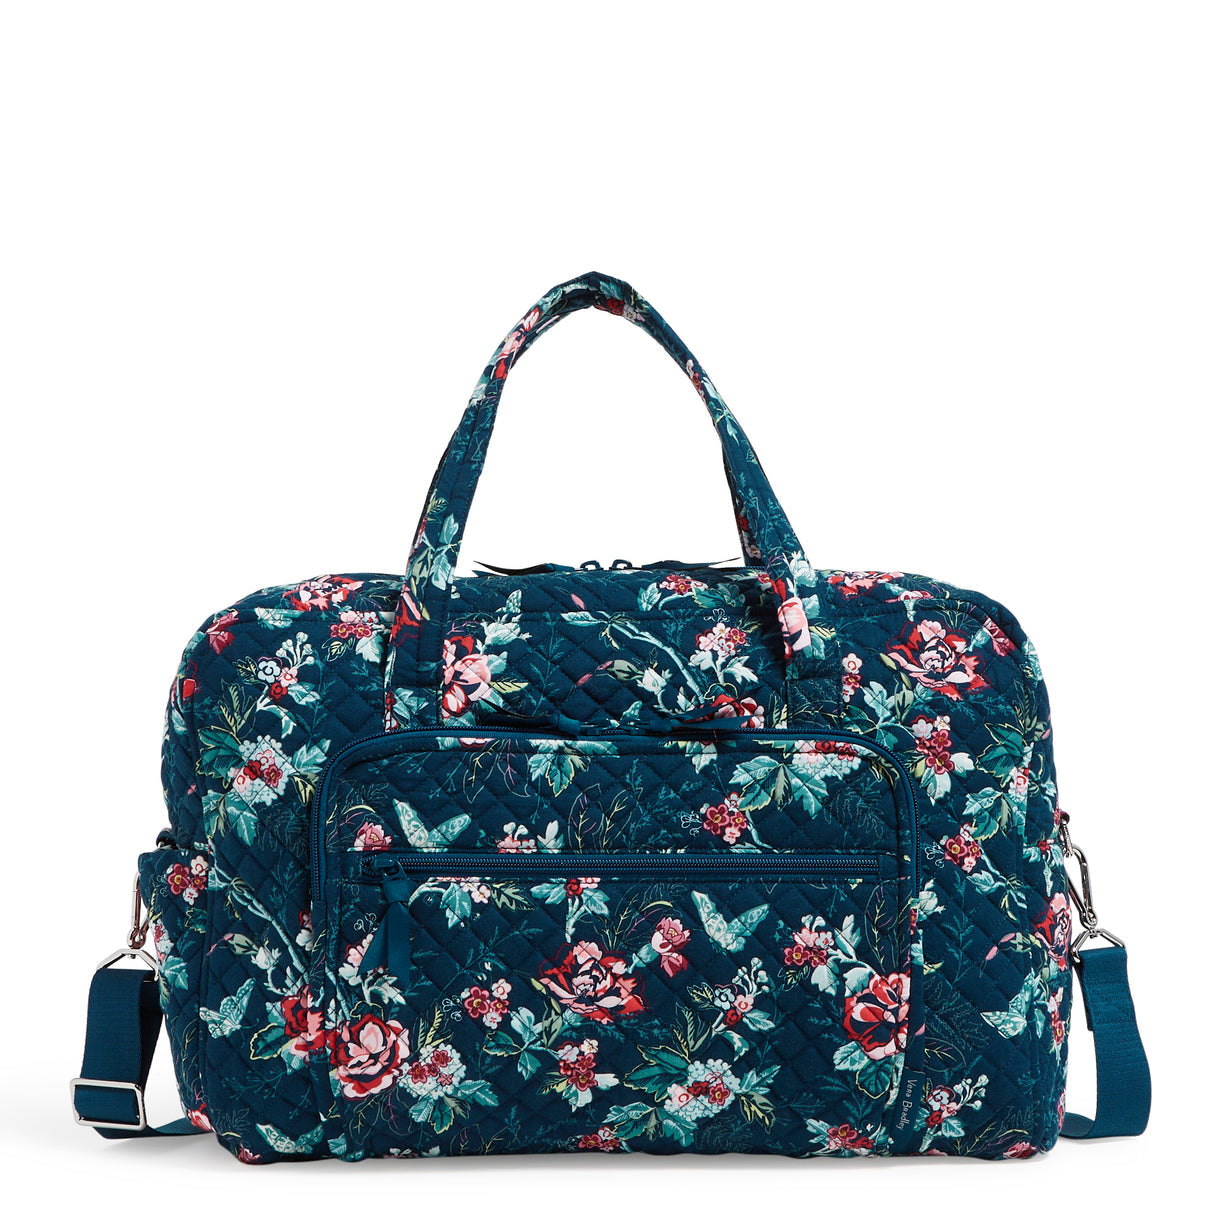 Vera Bradley weekender travel bag in rose toile pattern